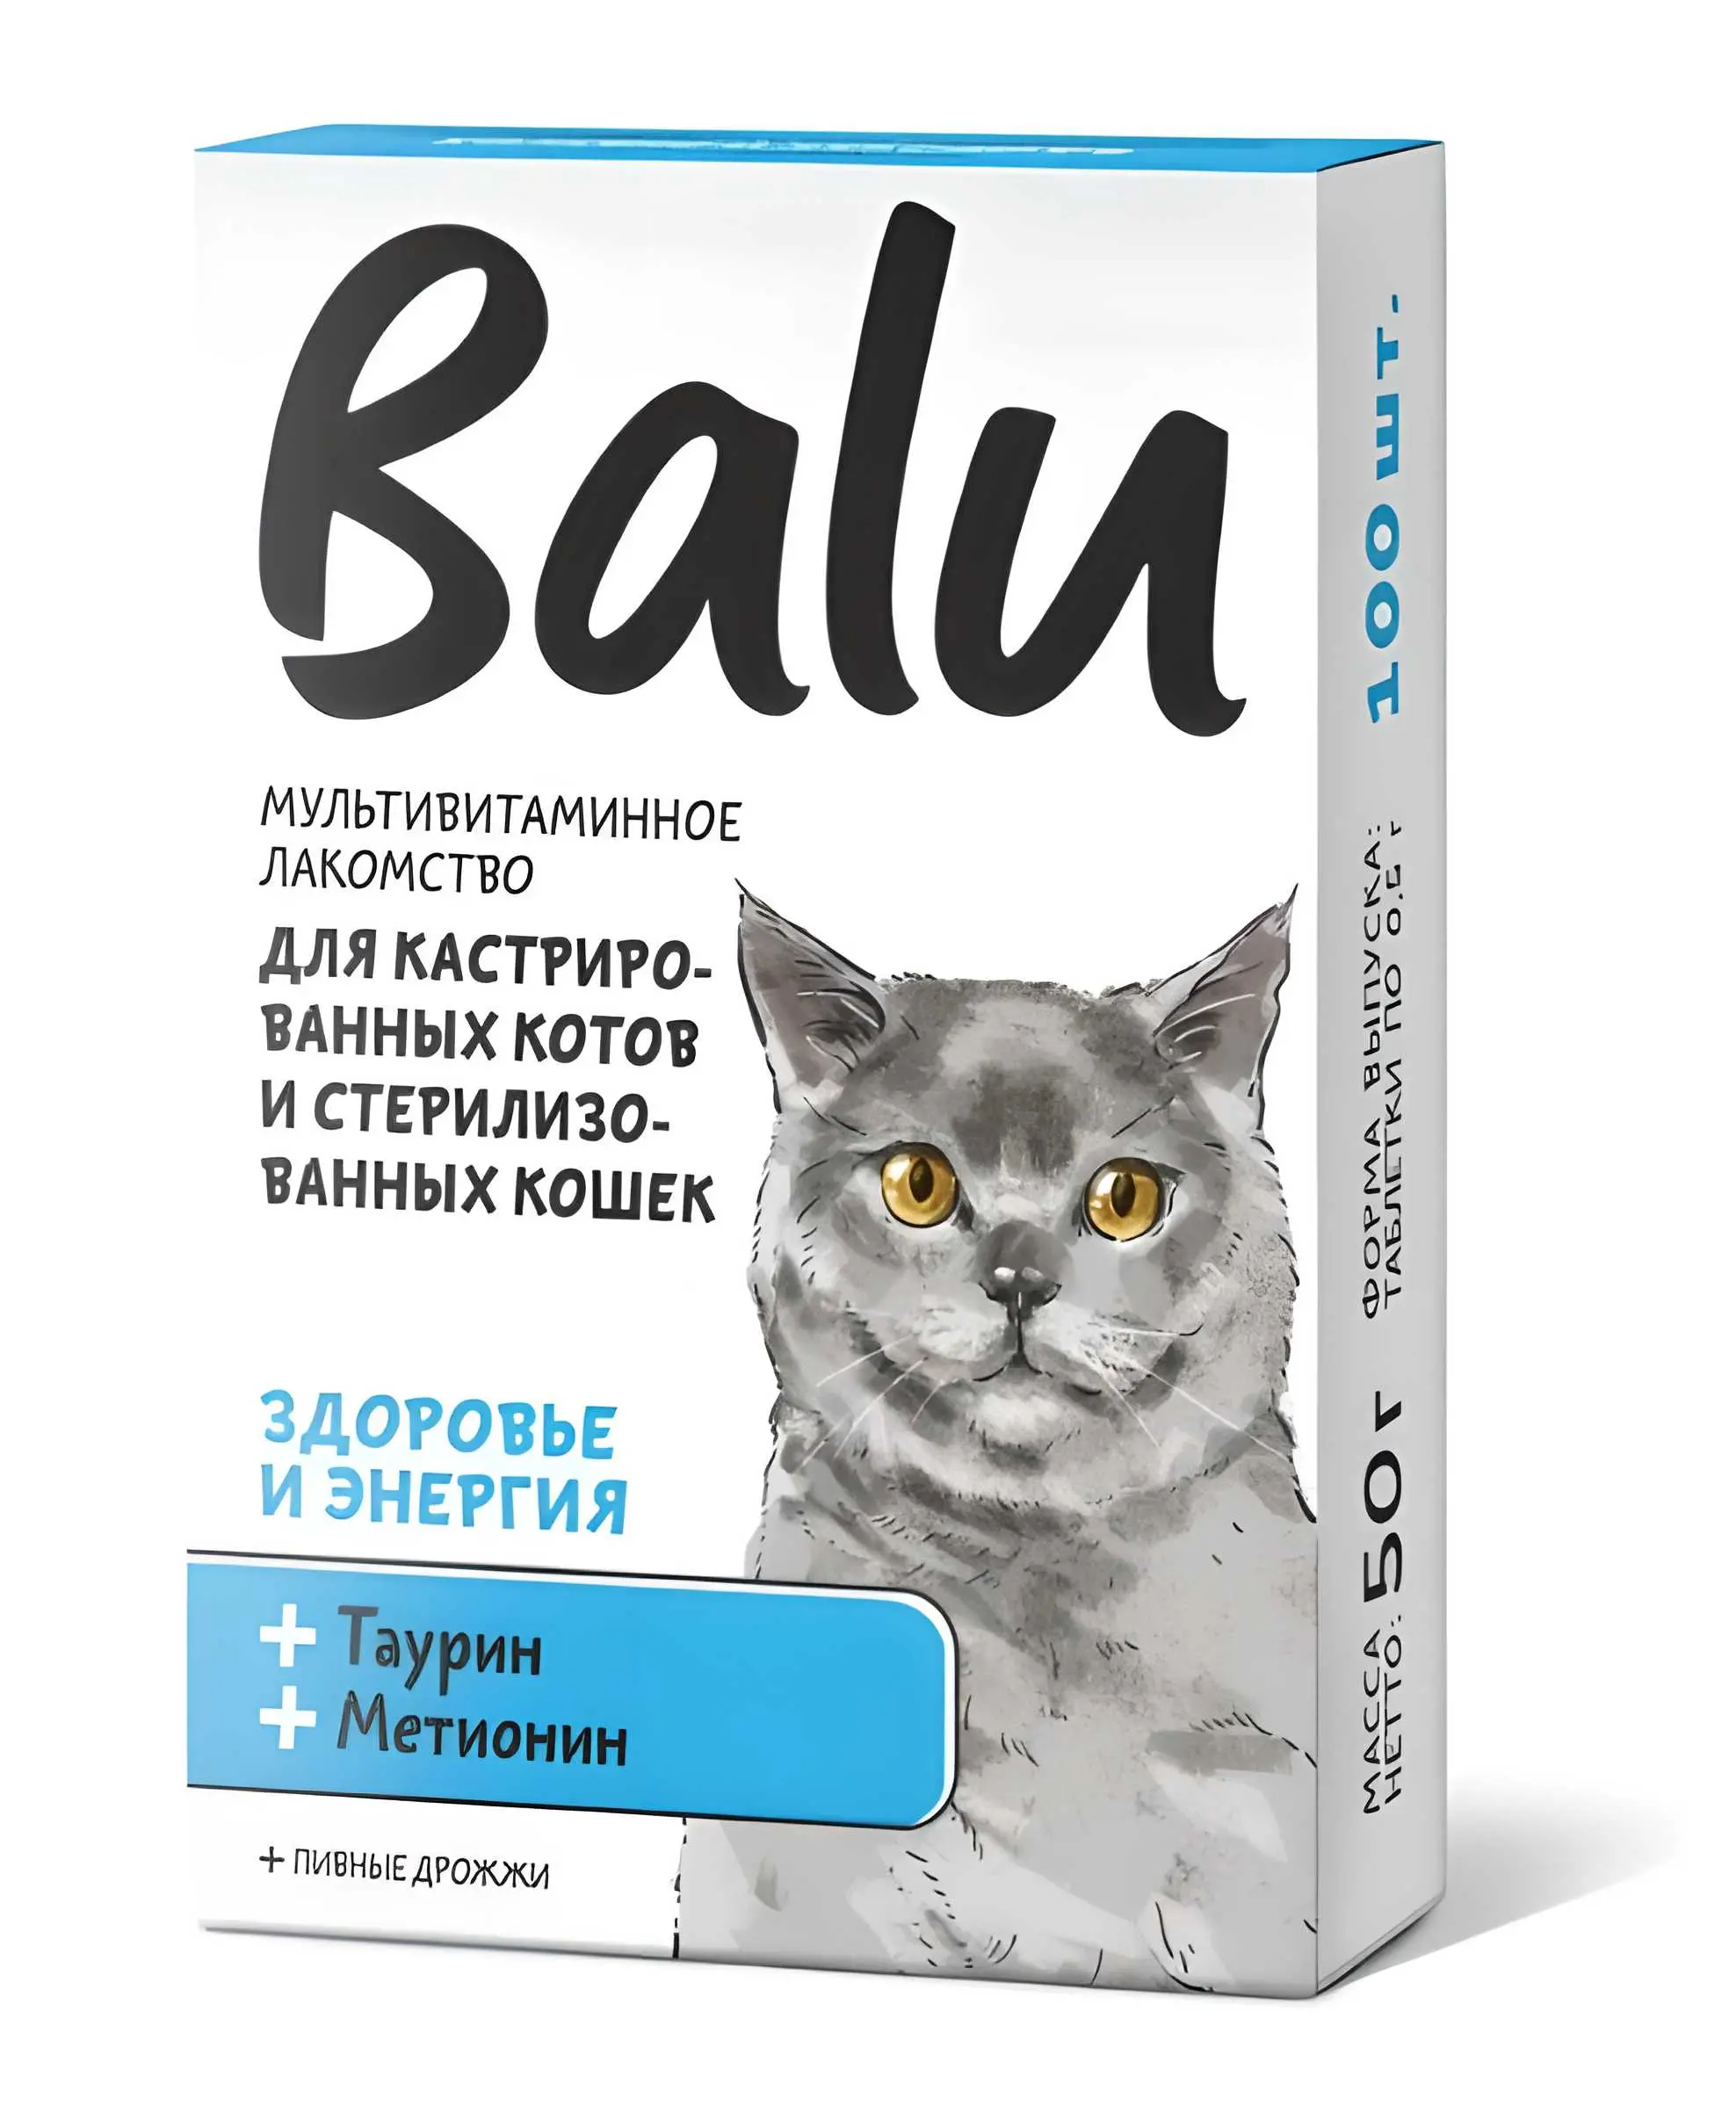 Лакомство мультивитаминное для кастрированных котов и стерилизованных кошек "Здоровье и энергия"